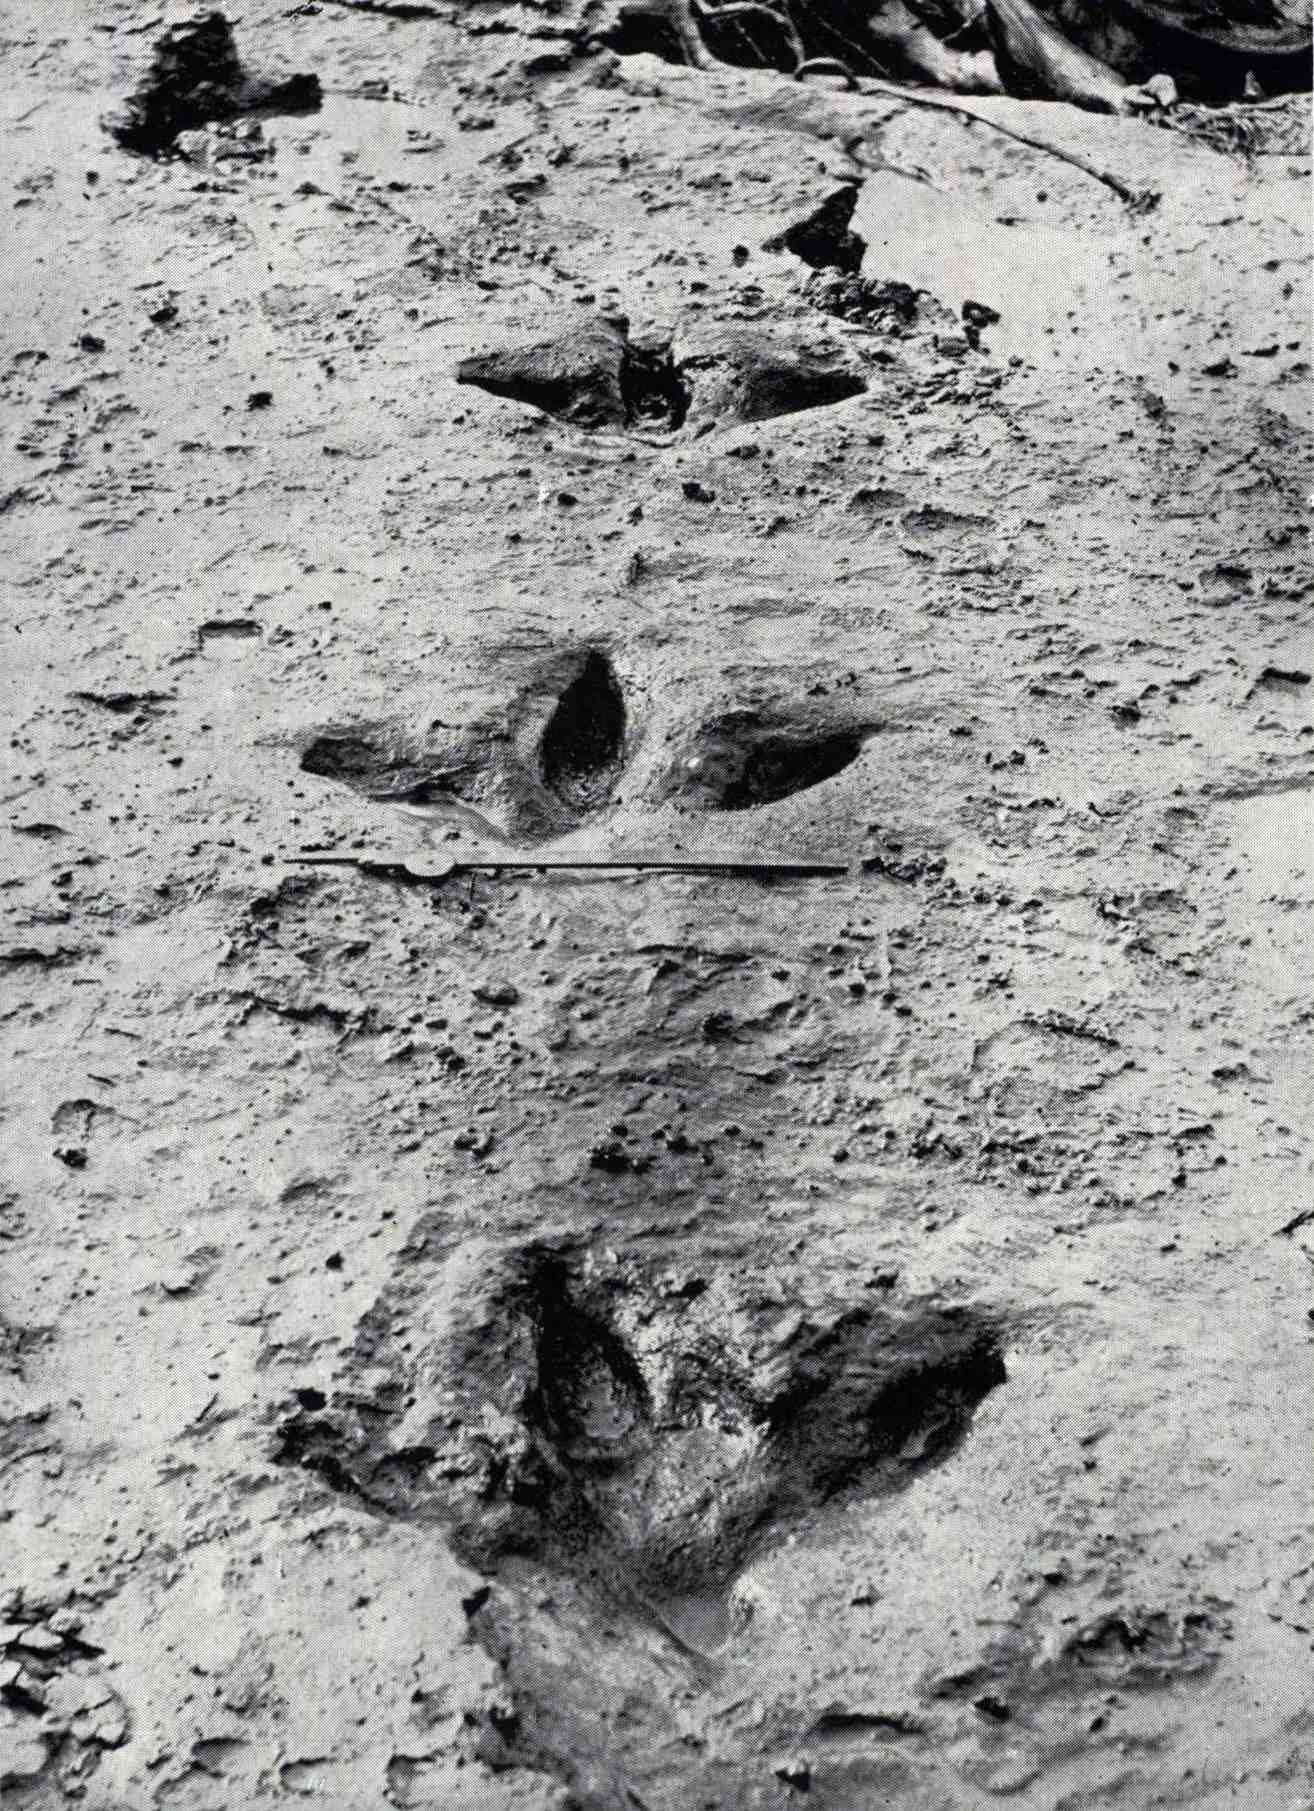 Tyto stopy Dinornis robustus byly odhaleny v srpnu 1911, když povodeň v řece Manawatū smetla modrou hlínu, která je pokryla a zachovala. Ukazují, že moa měl tři silné prsty směřující dopředu a na rozdíl od většiny ostatních ptáků nadřádu běžci malý zadní prst.